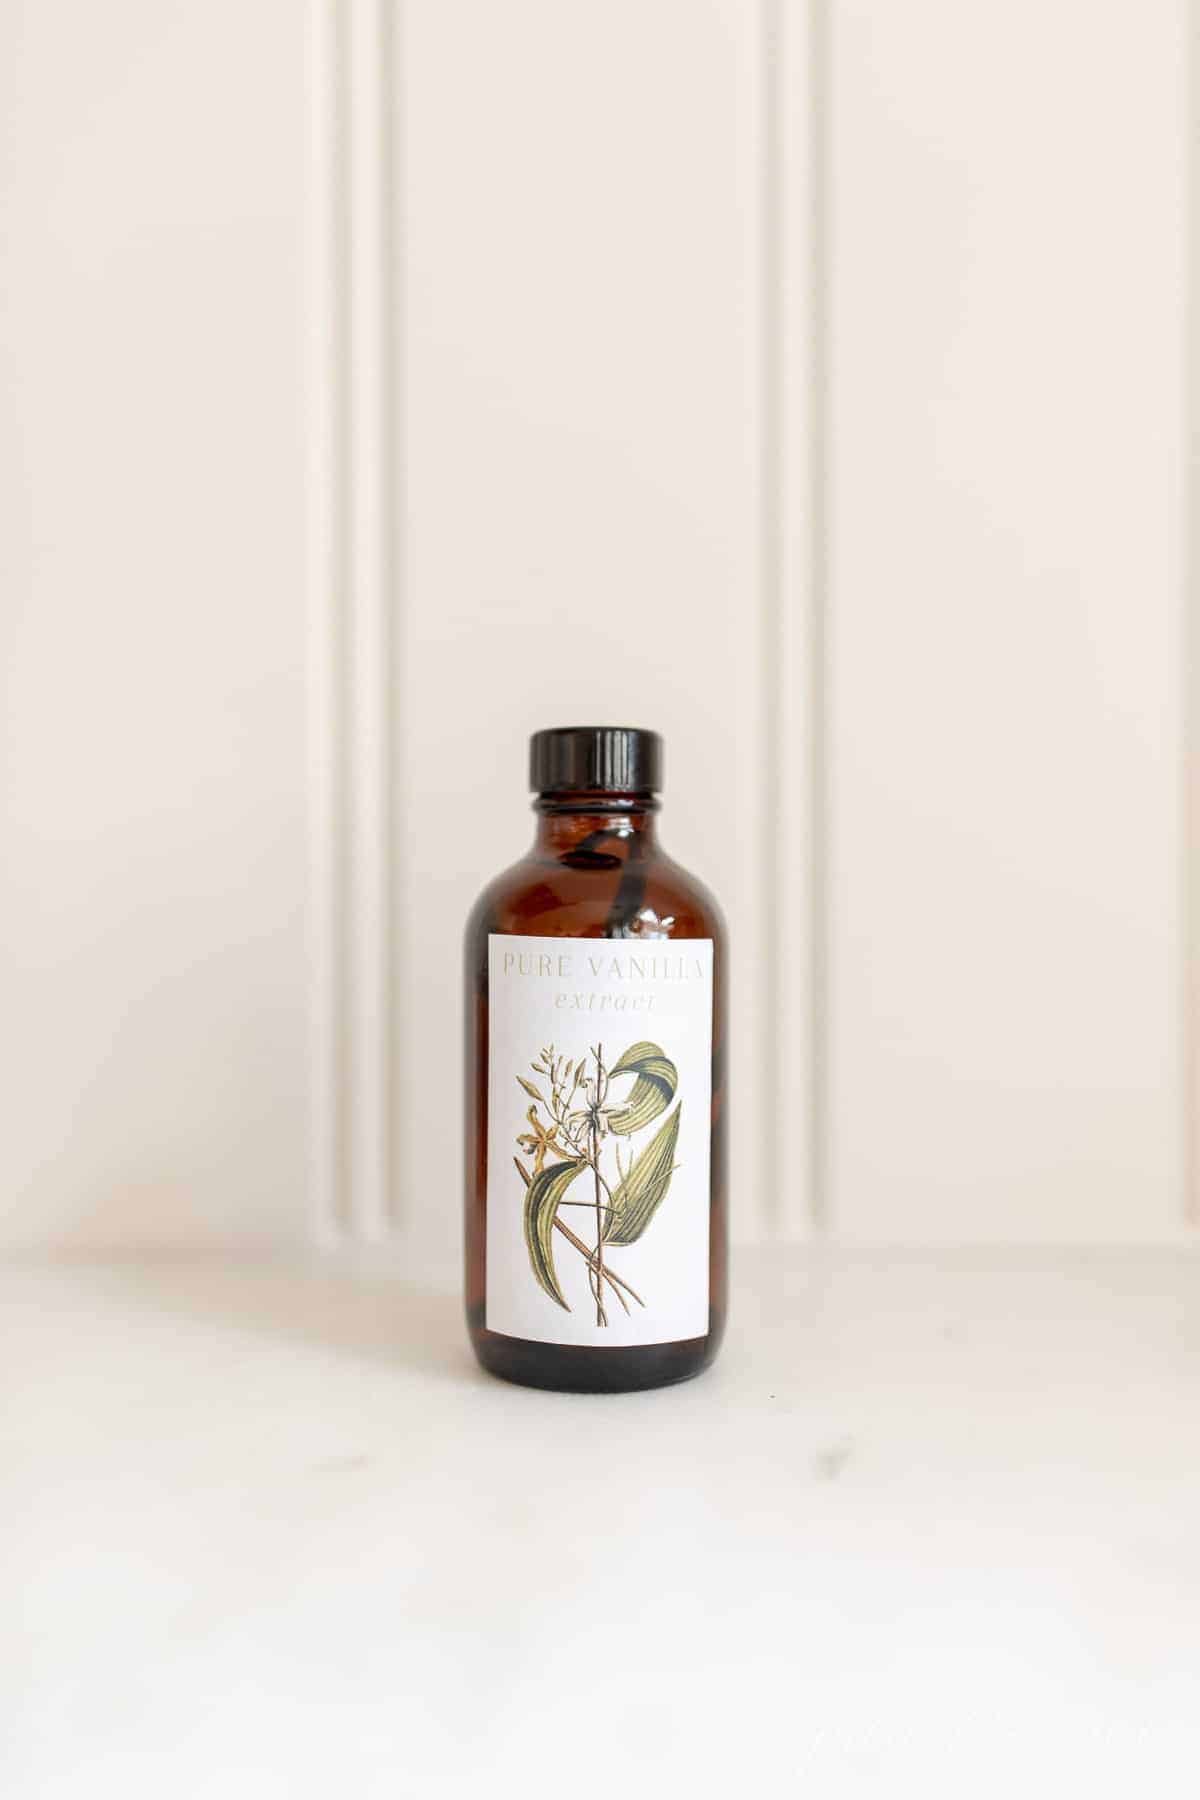 Homemade vanilla extract in an amber bottle on a white countertop. #homemadevanillaextract #vanilla #vanillabean